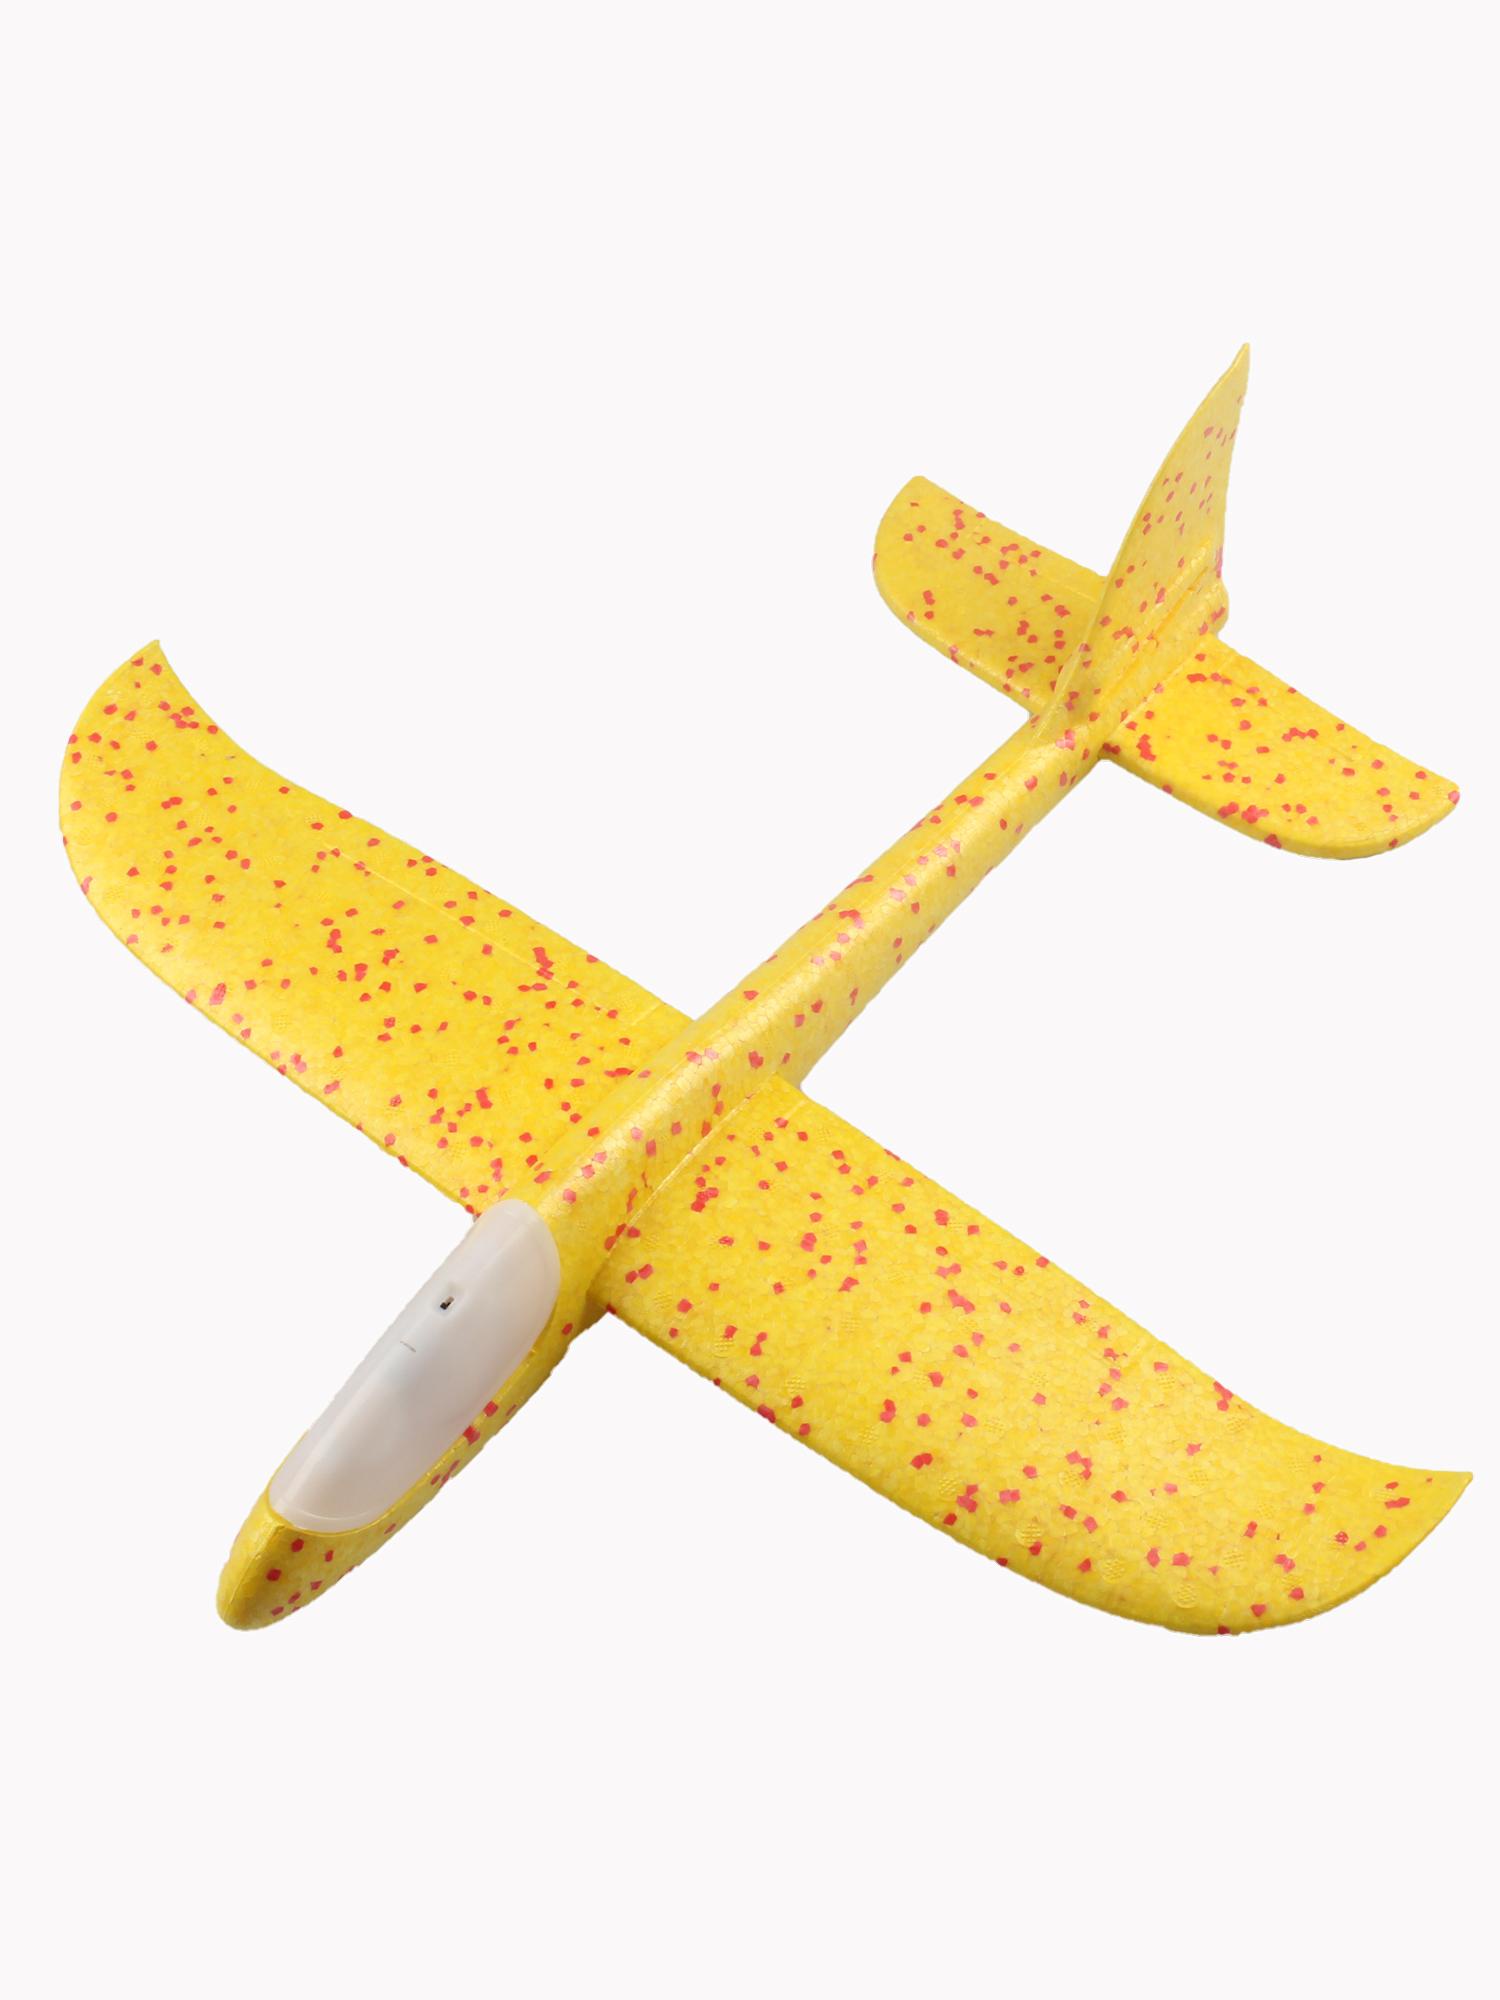 фото Метательный самолет с подсветкой кабины TipTop, Желтый